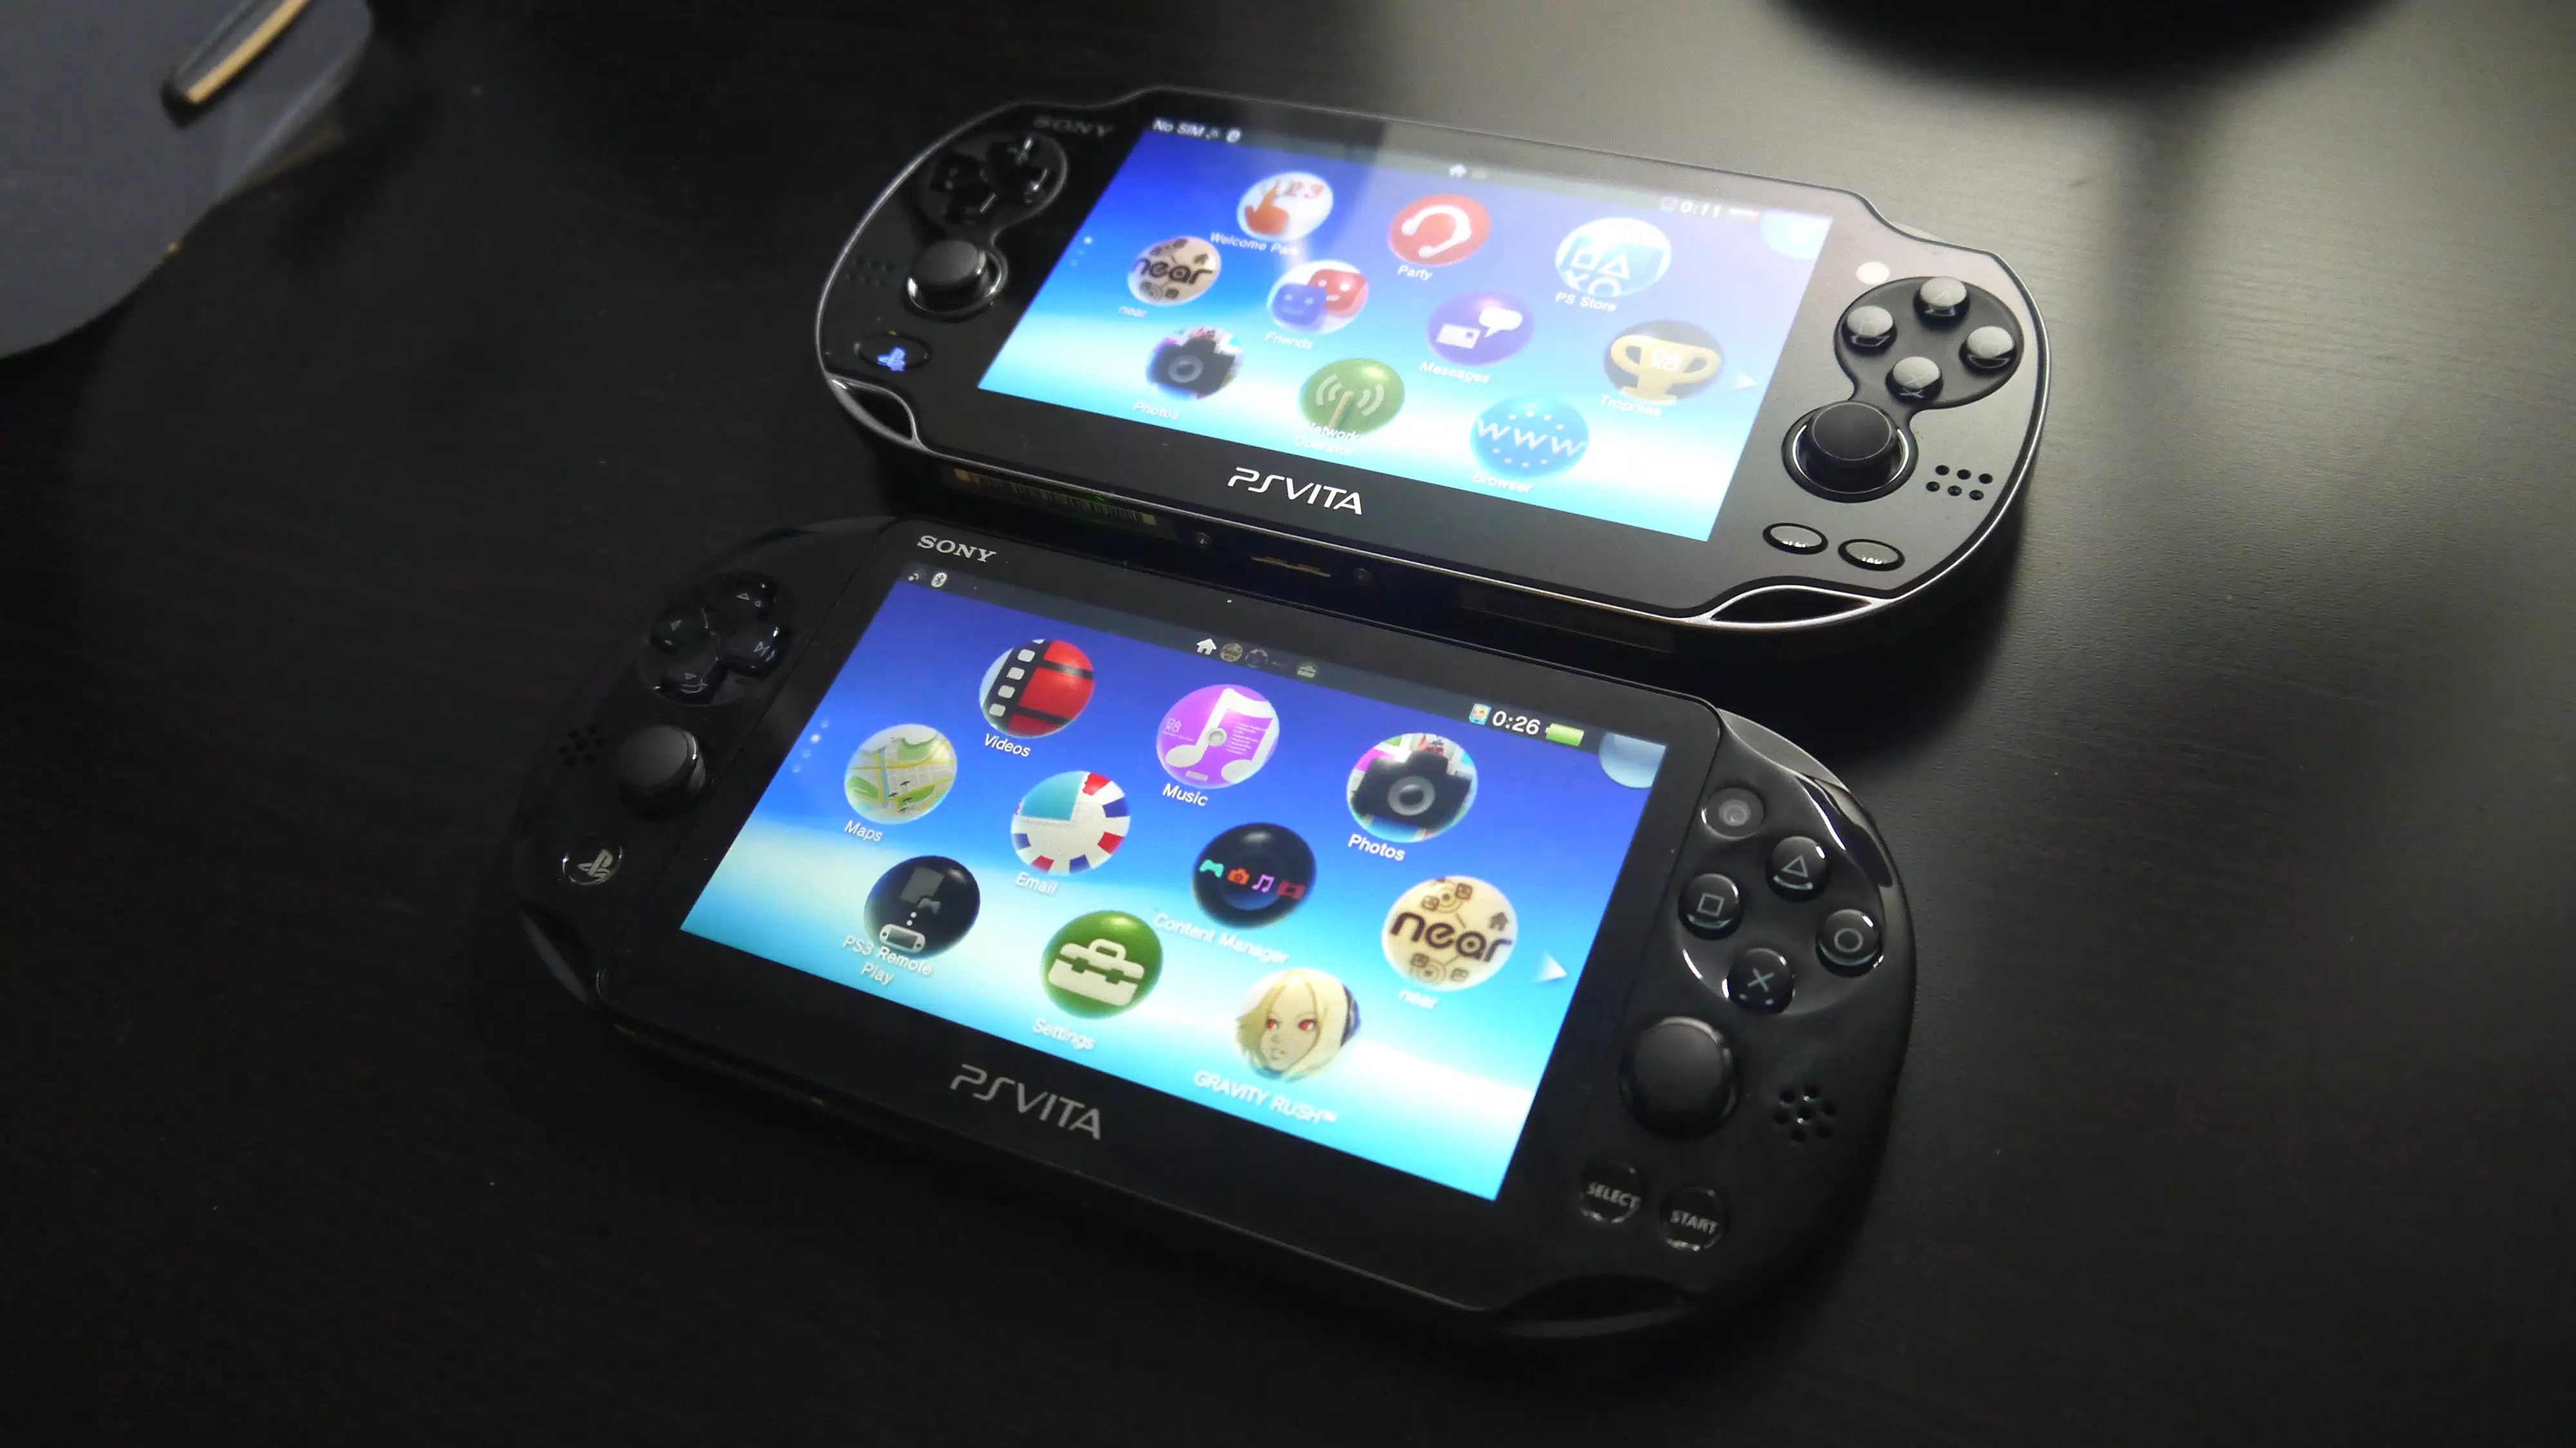 PS Vita, вышедшая в 2011 году, выпускалась в двух модификациях: обычной и Slim